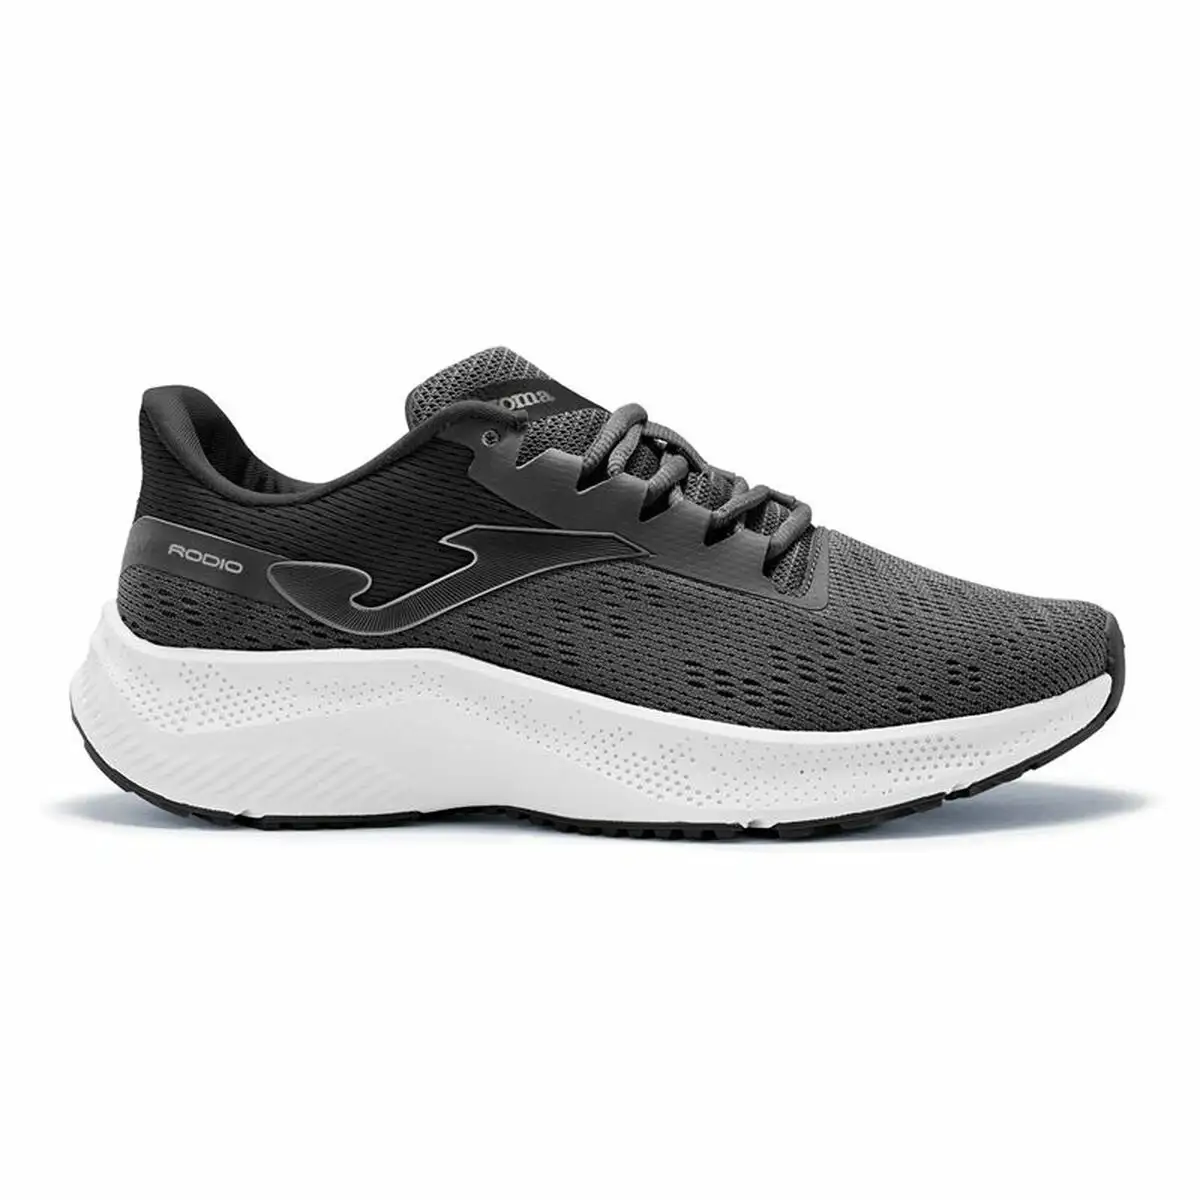 Chaussures de running pour adultes joma sport rodio 22 gris noir homme_4249. Entrez dans l'Univers de DIAYTAR SENEGAL - Où le Choix Rencontre l'Authenticité. Explorez nos rayons virtuels et trouvez des produits qui incarnent la richesse de notre culture.